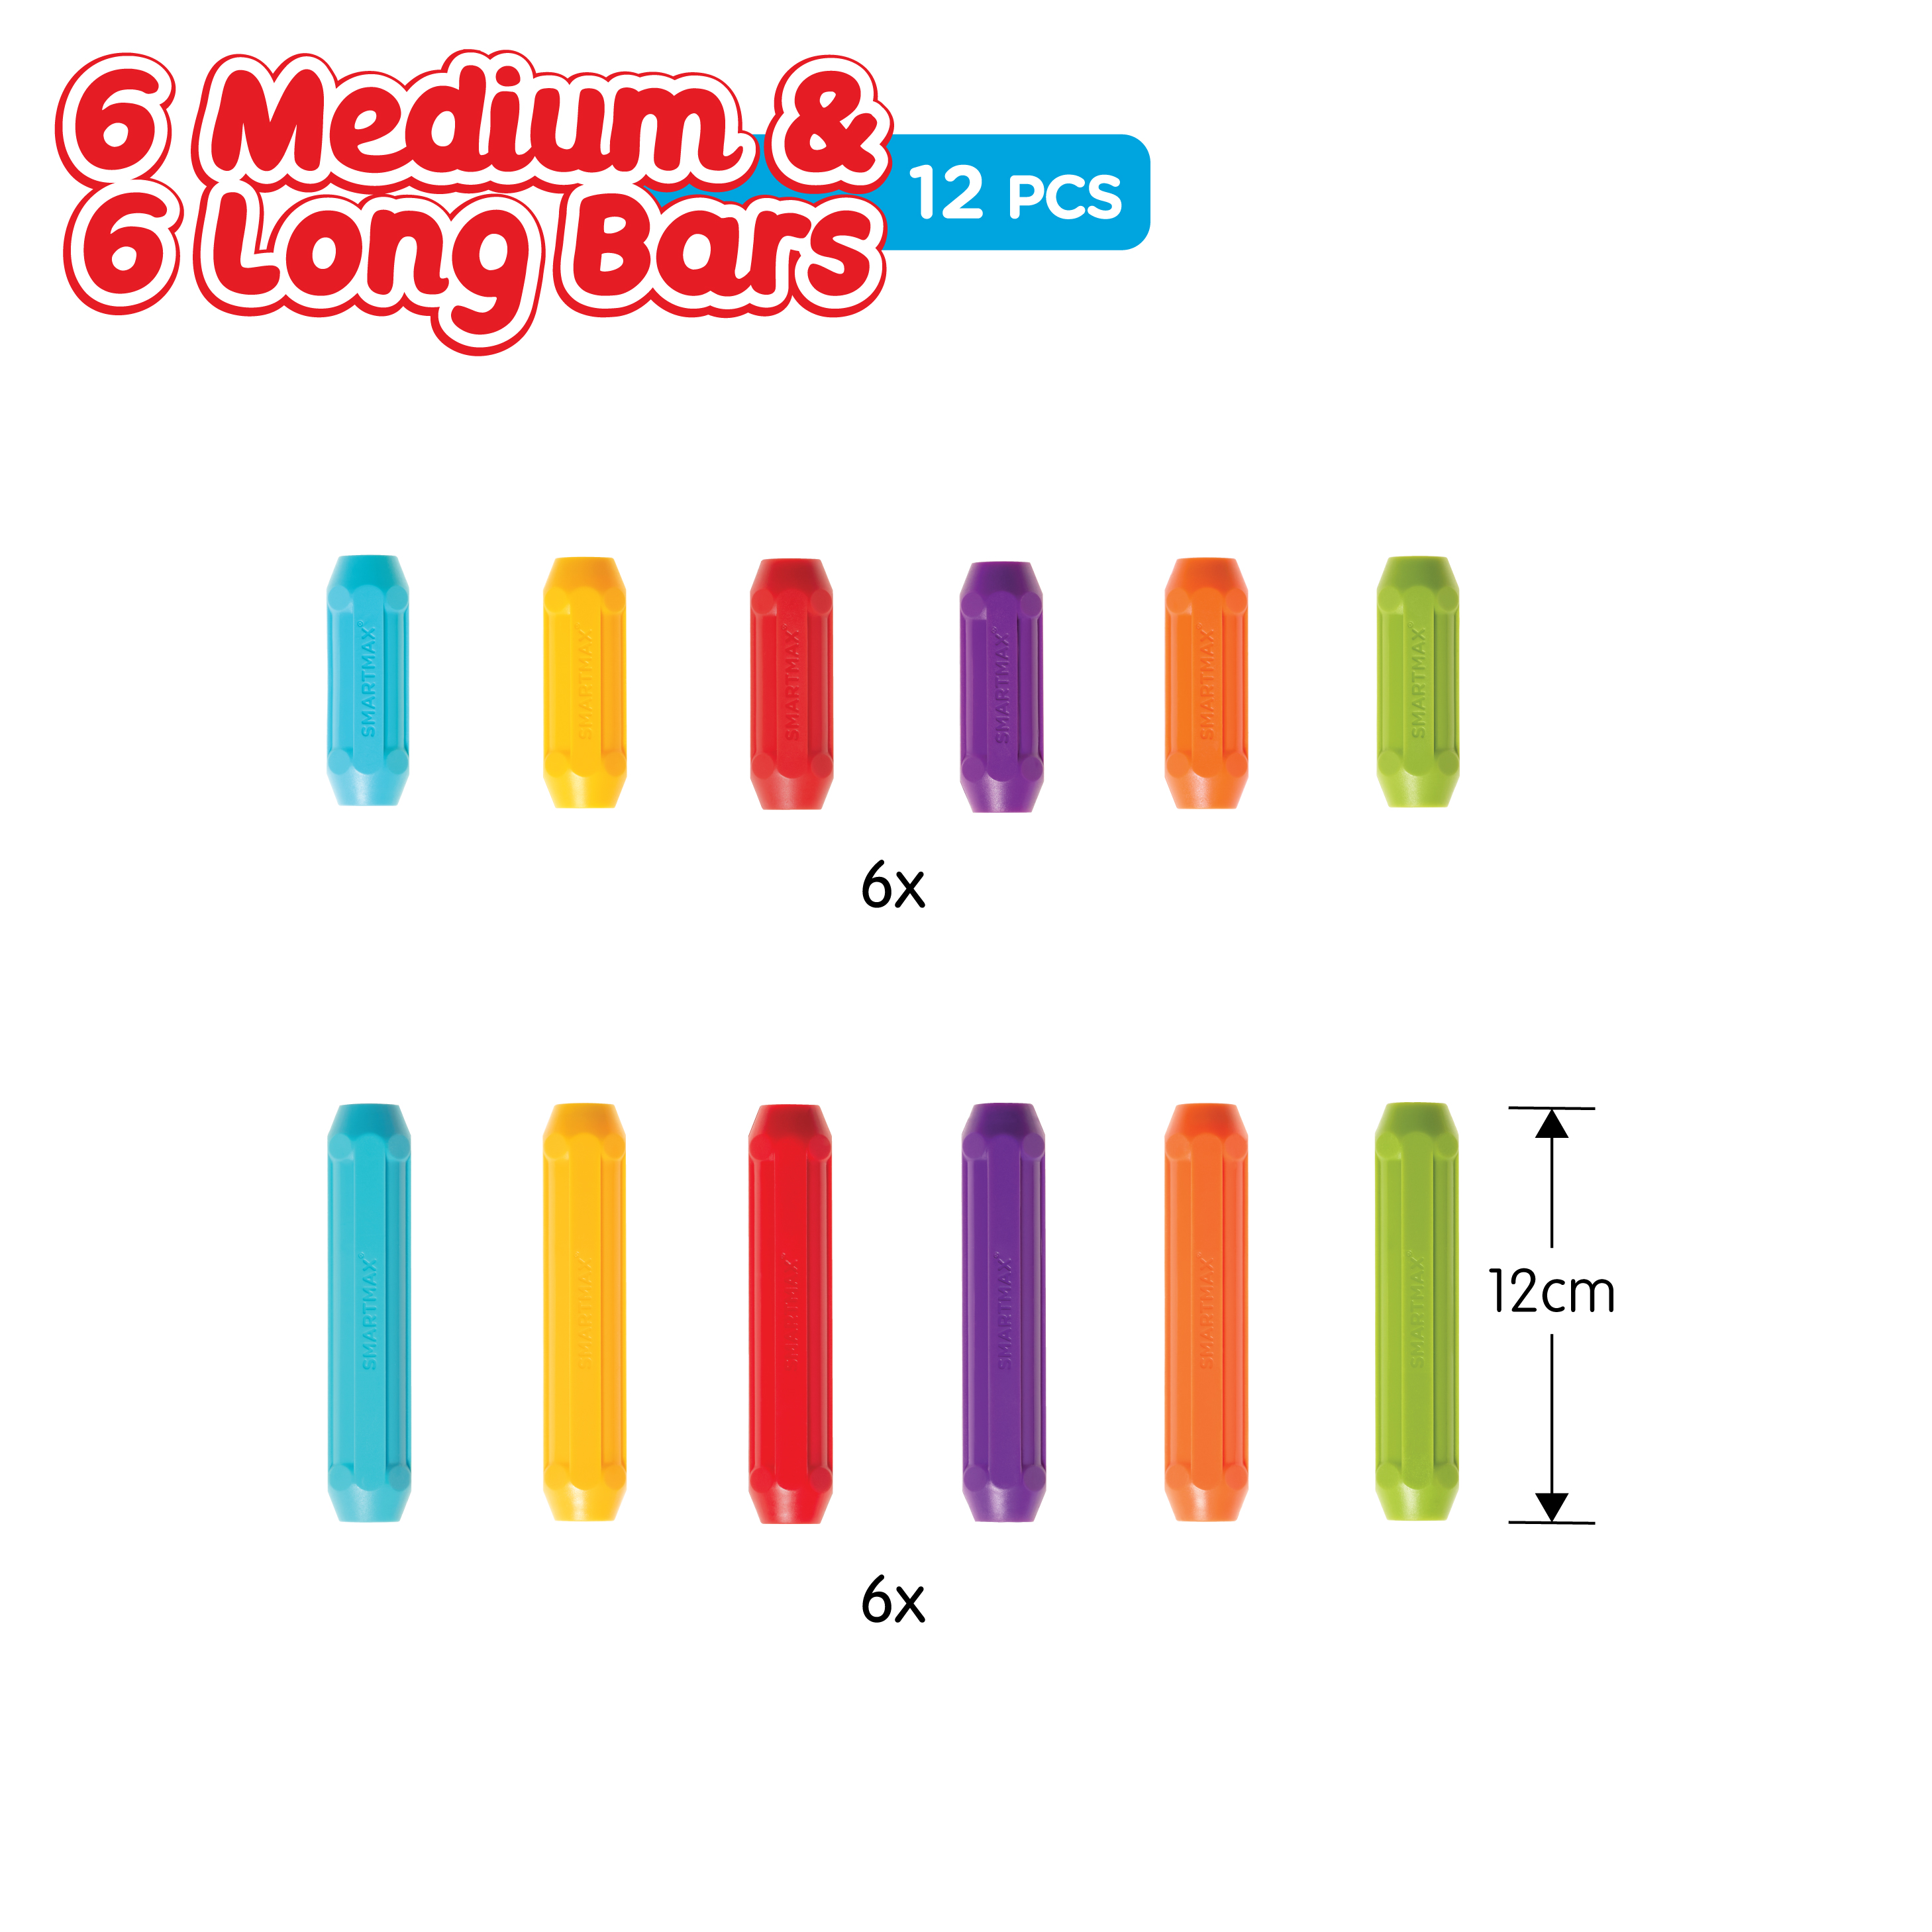 6 Medium & 6 Long Bars